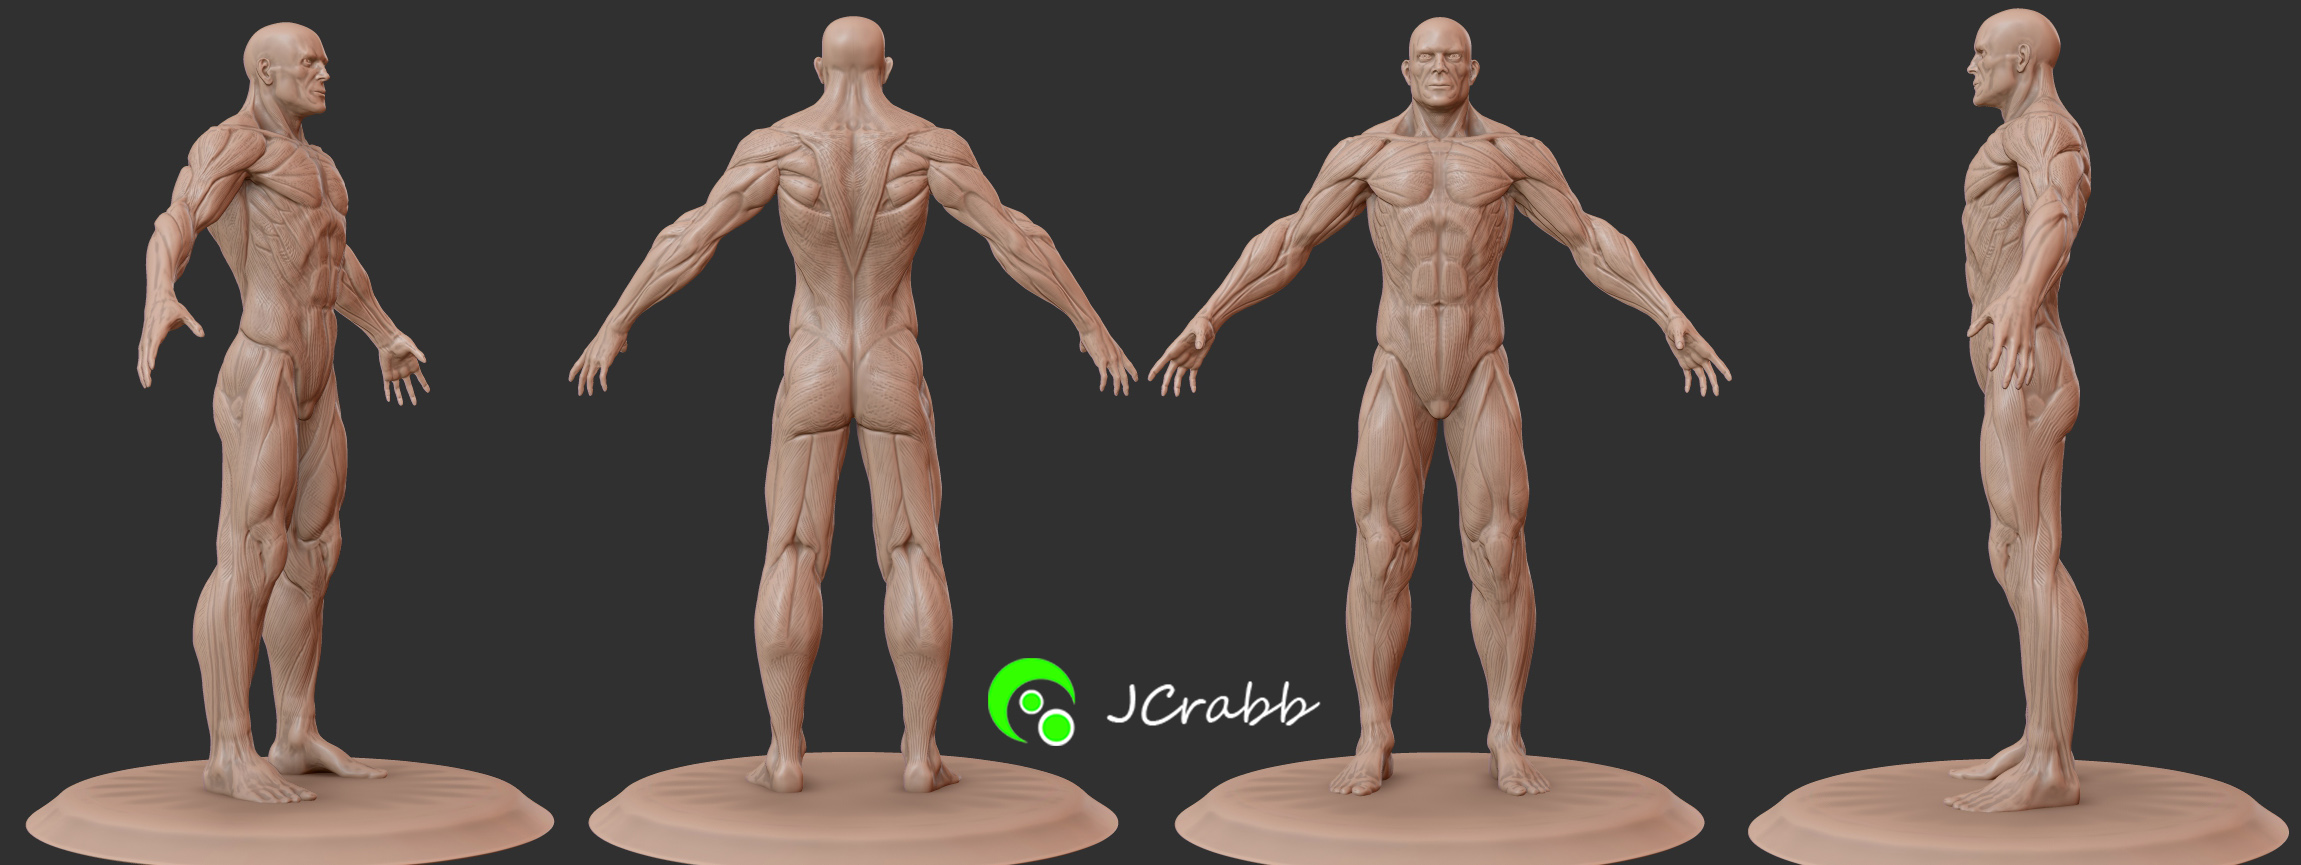 Anatomy Figurine-Full Muscle Tone.jpg